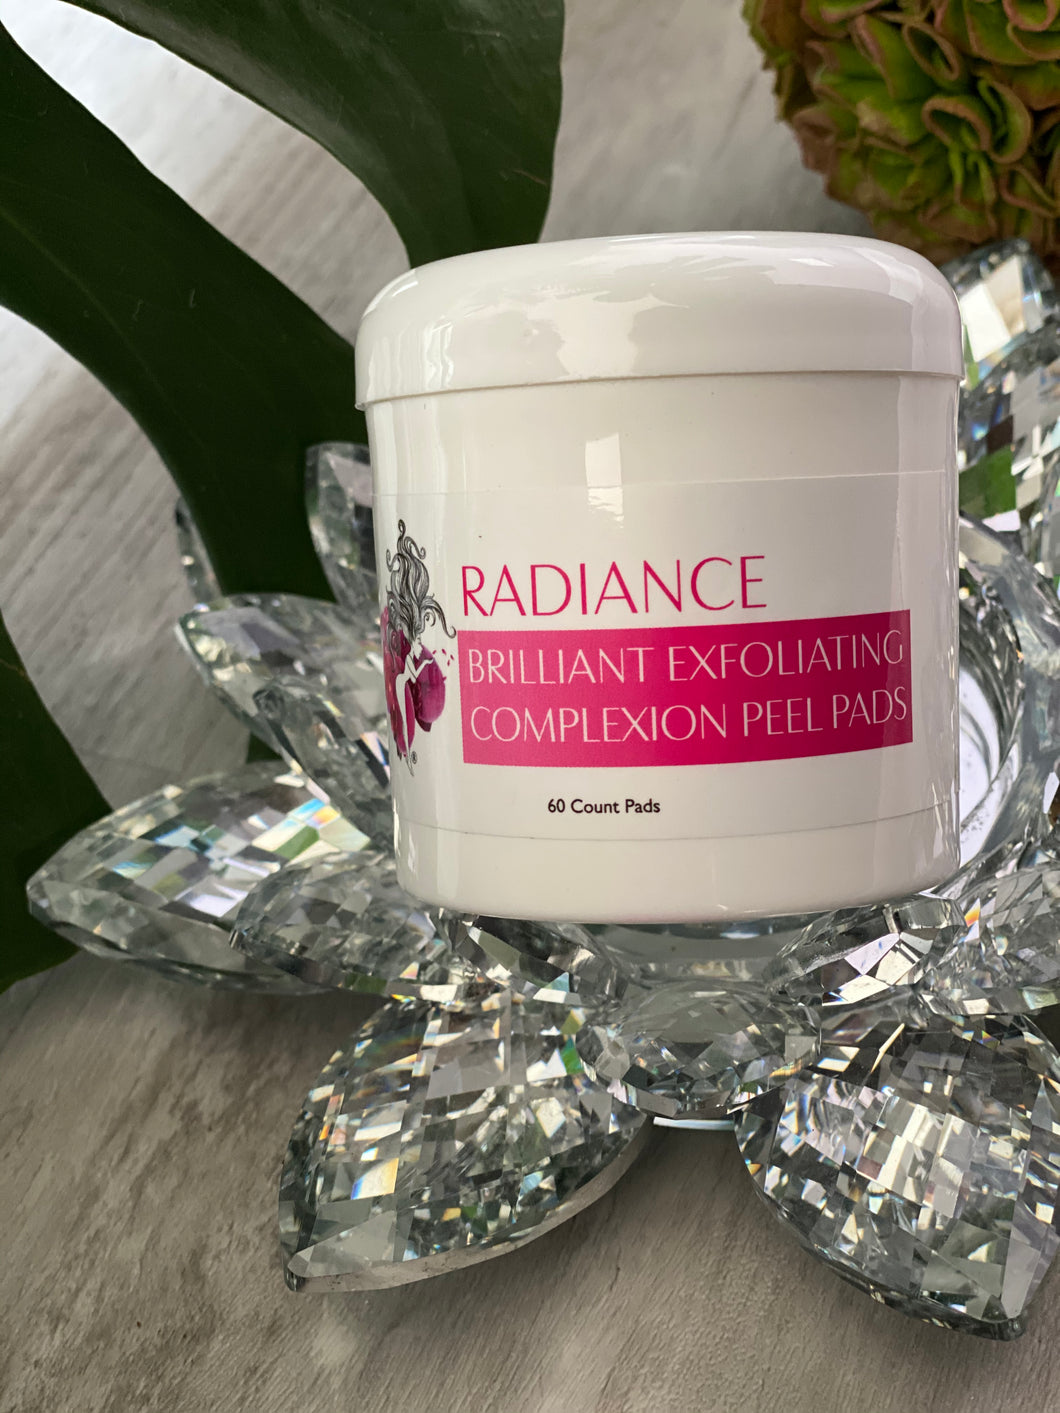 Radiance “Brilliant Exfoliating Complexion Peel Pads”